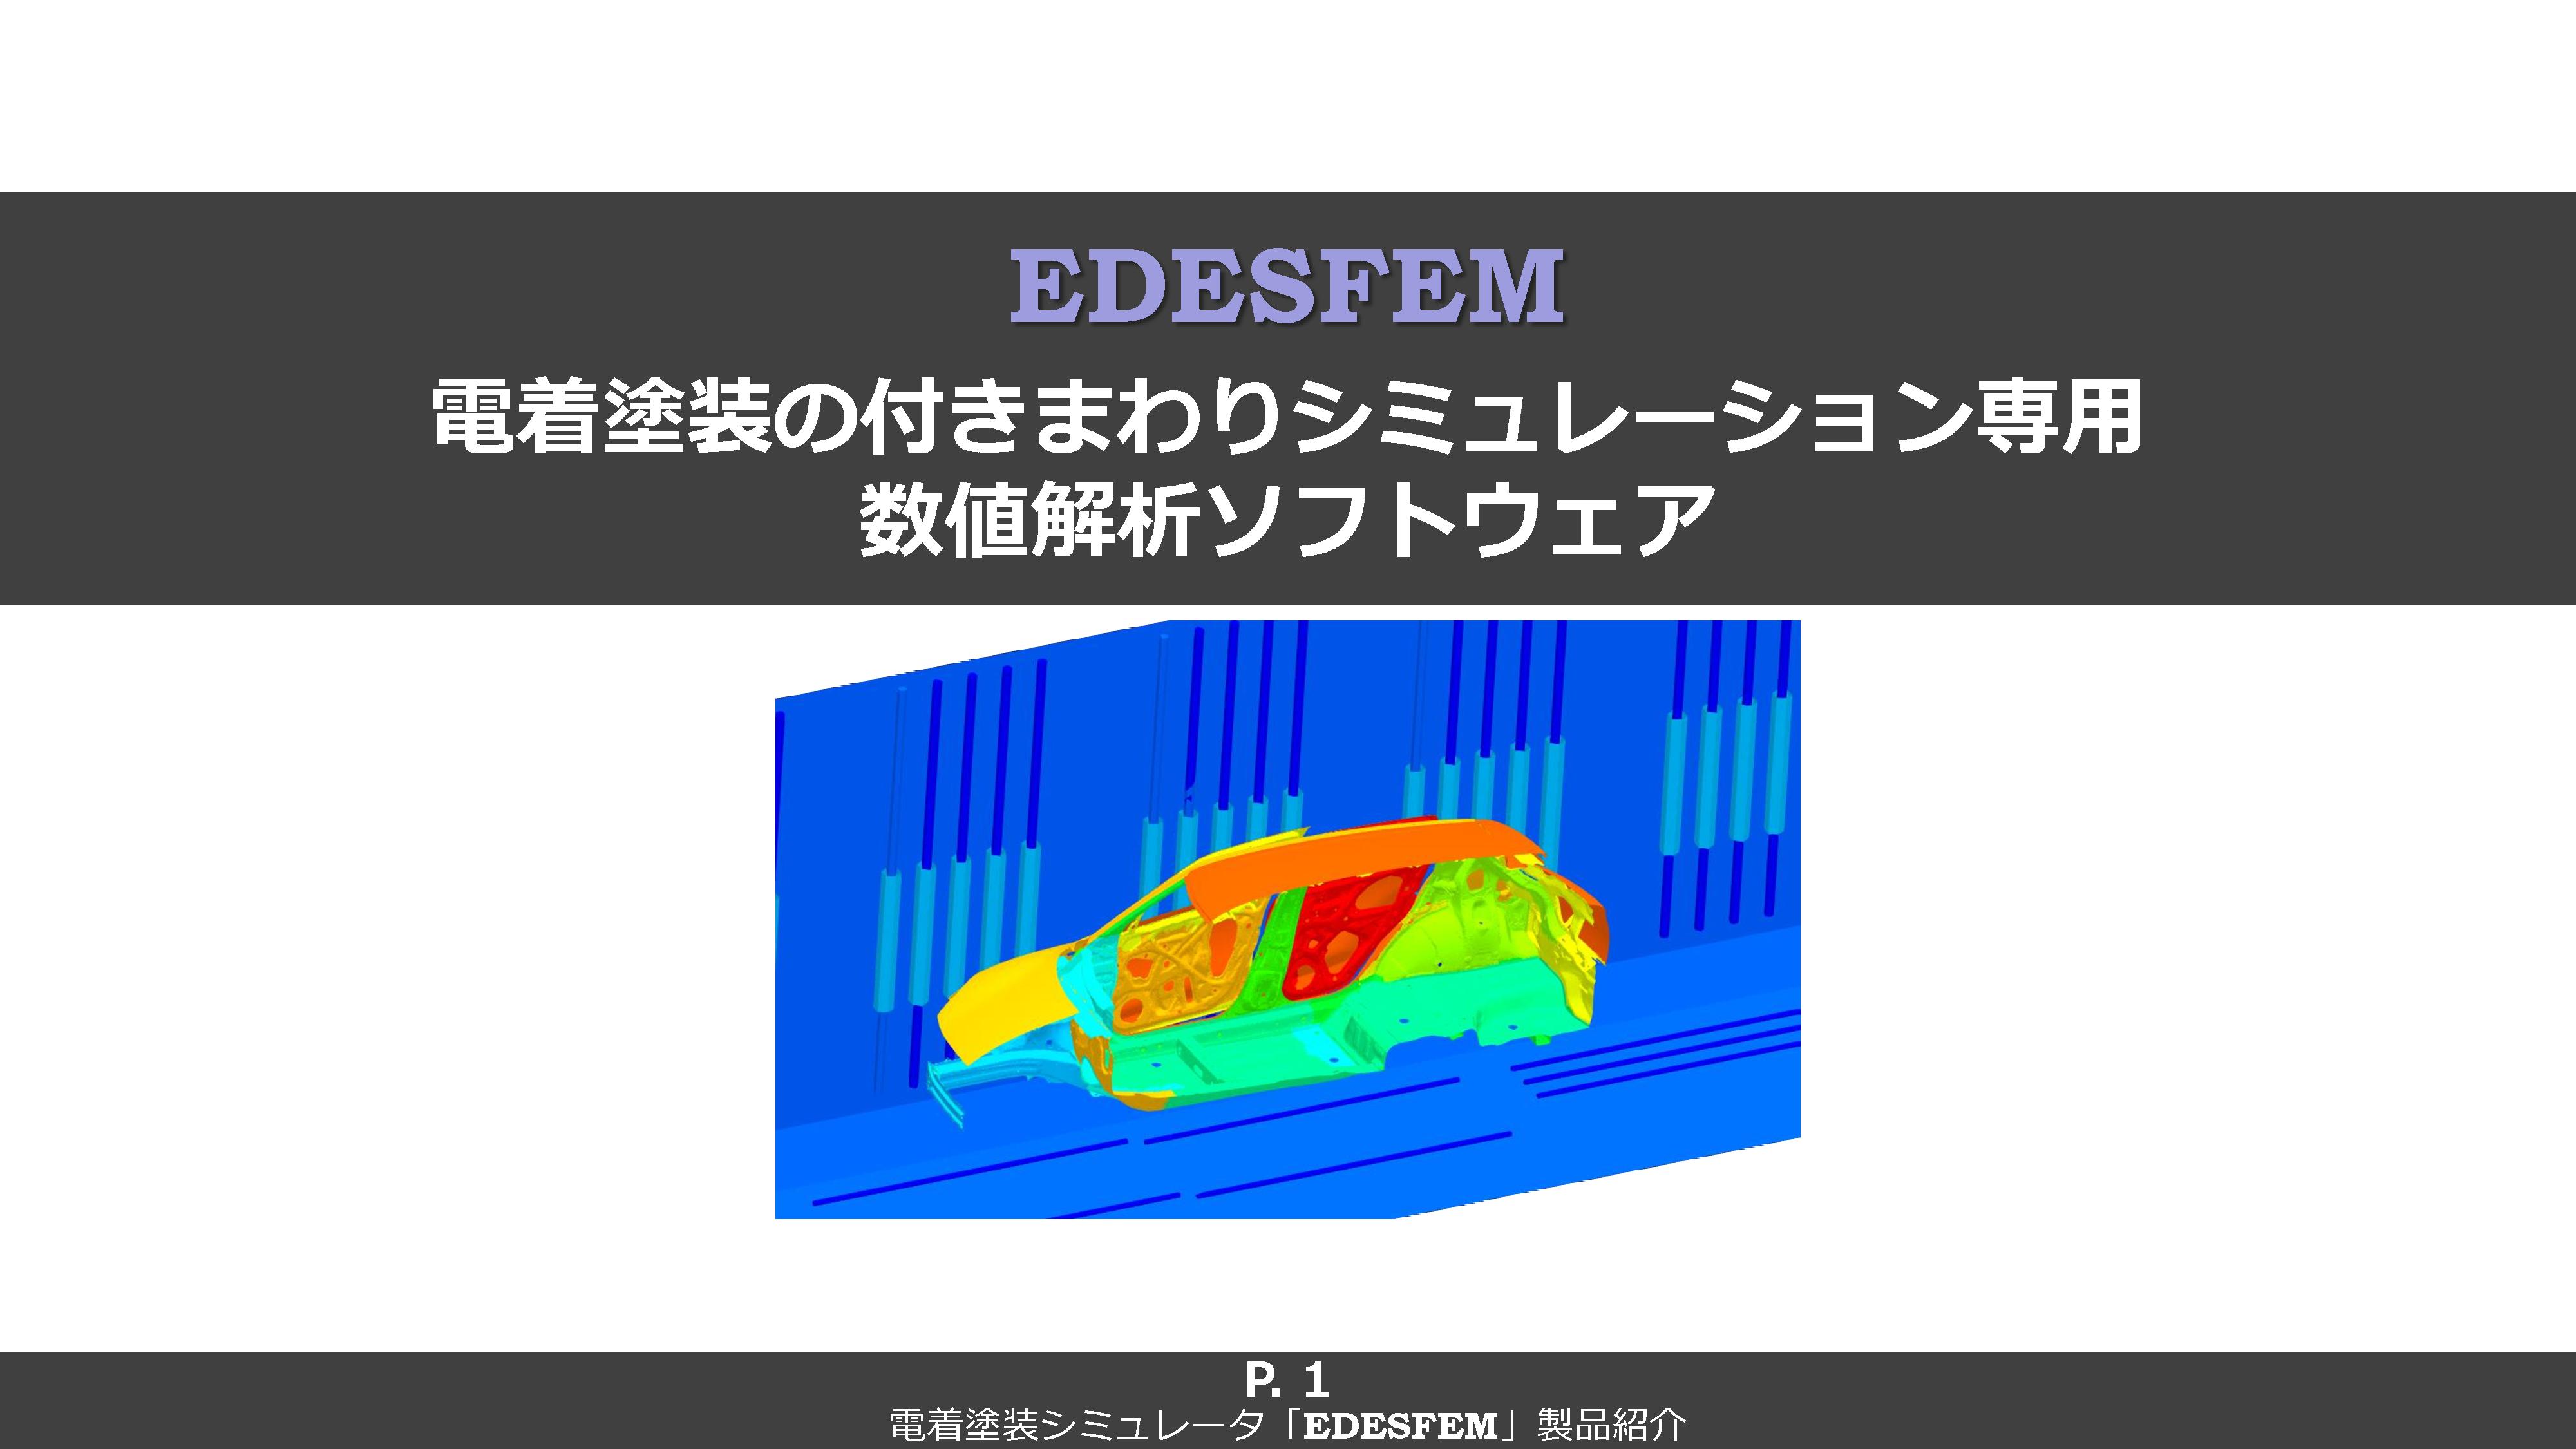 EDESFEM Slide